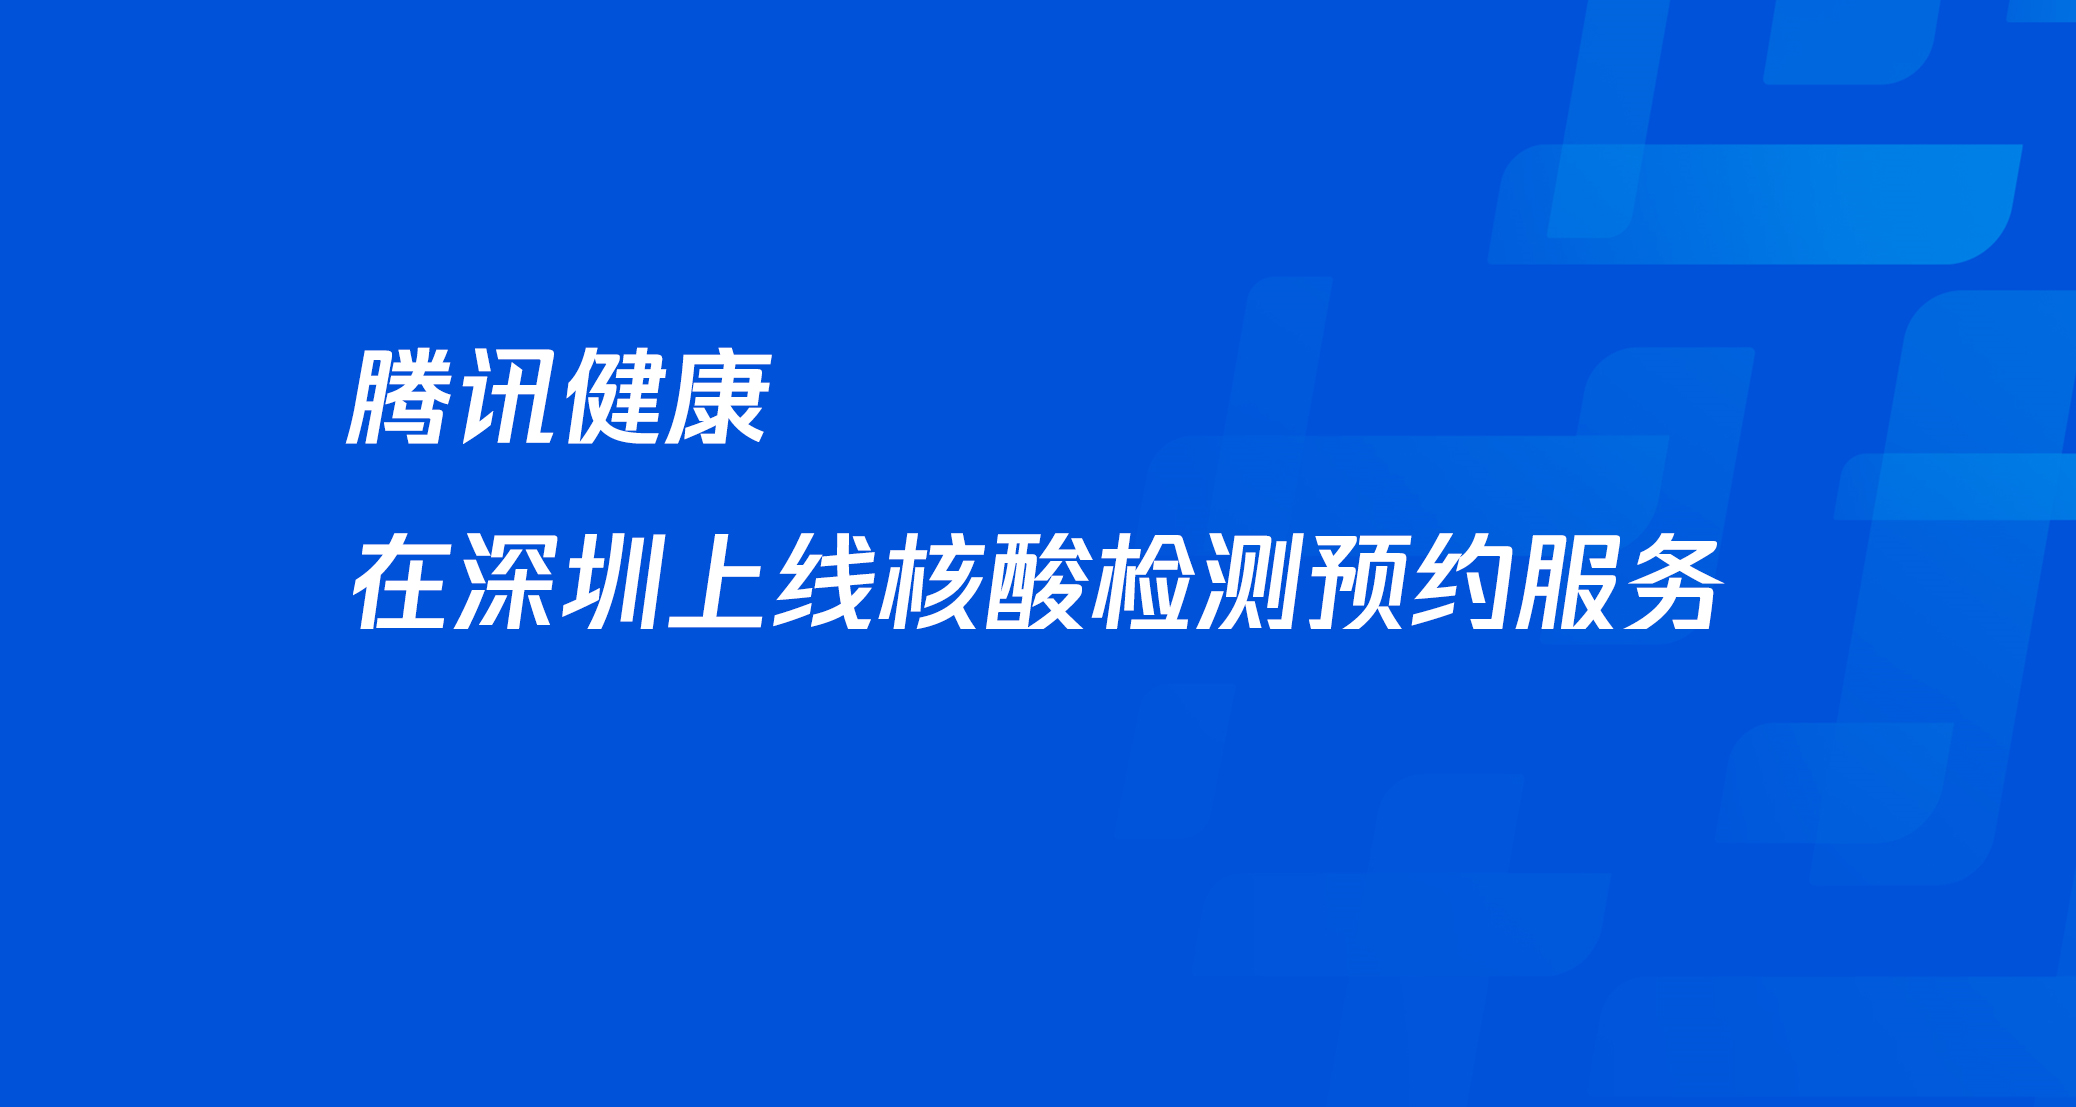 今天，腾讯健康在深圳上线核酸检测预约服务